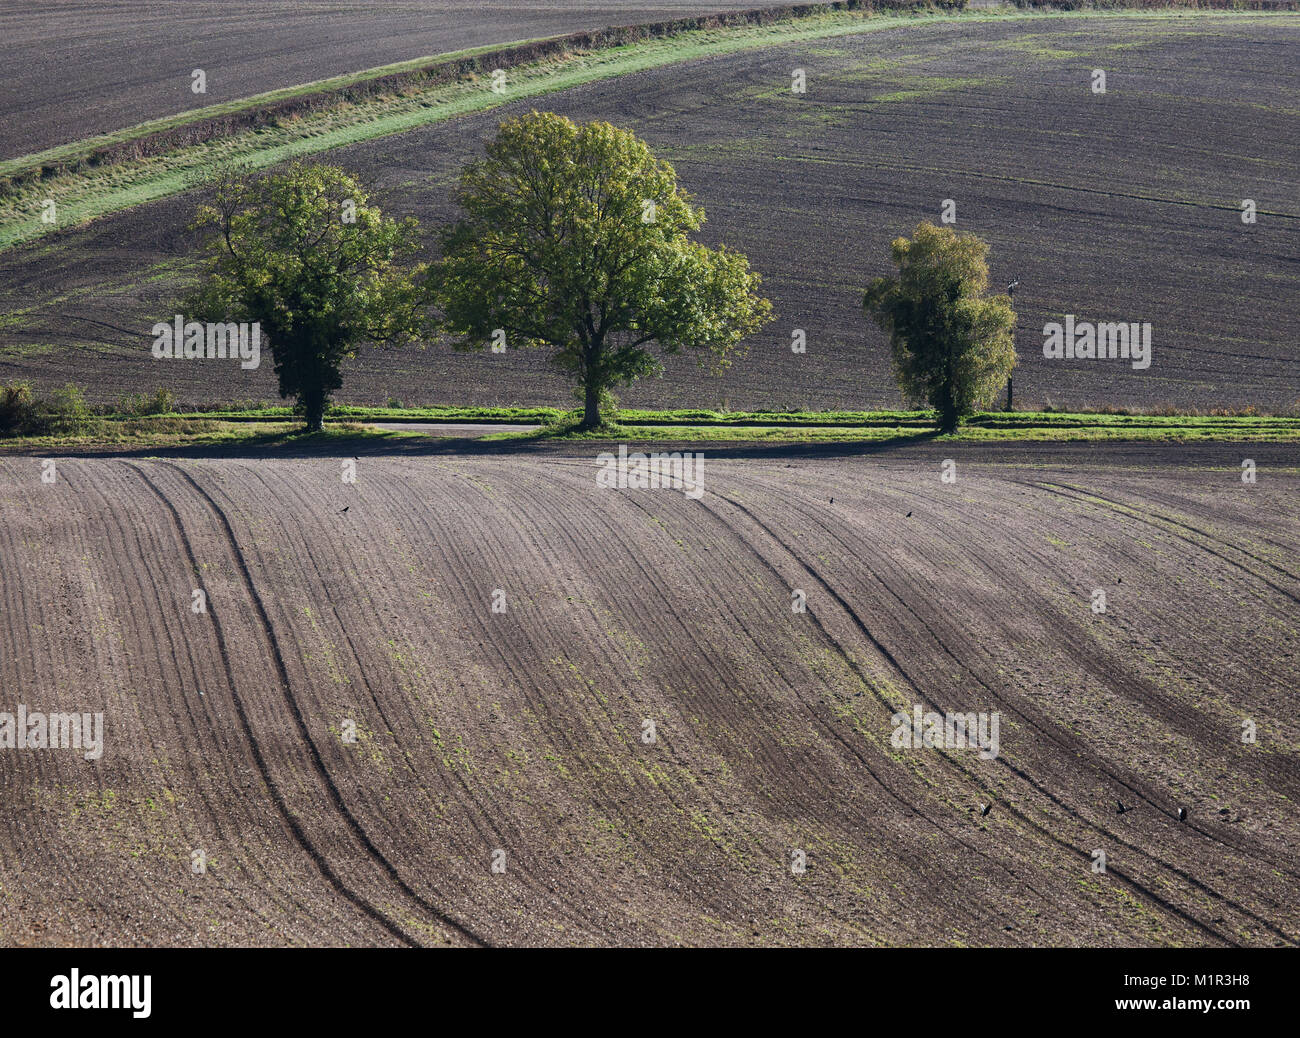 Patrones ondulados creado por los surcos del campo con árboles, Buckinghamshire, Inglaterra Foto de stock